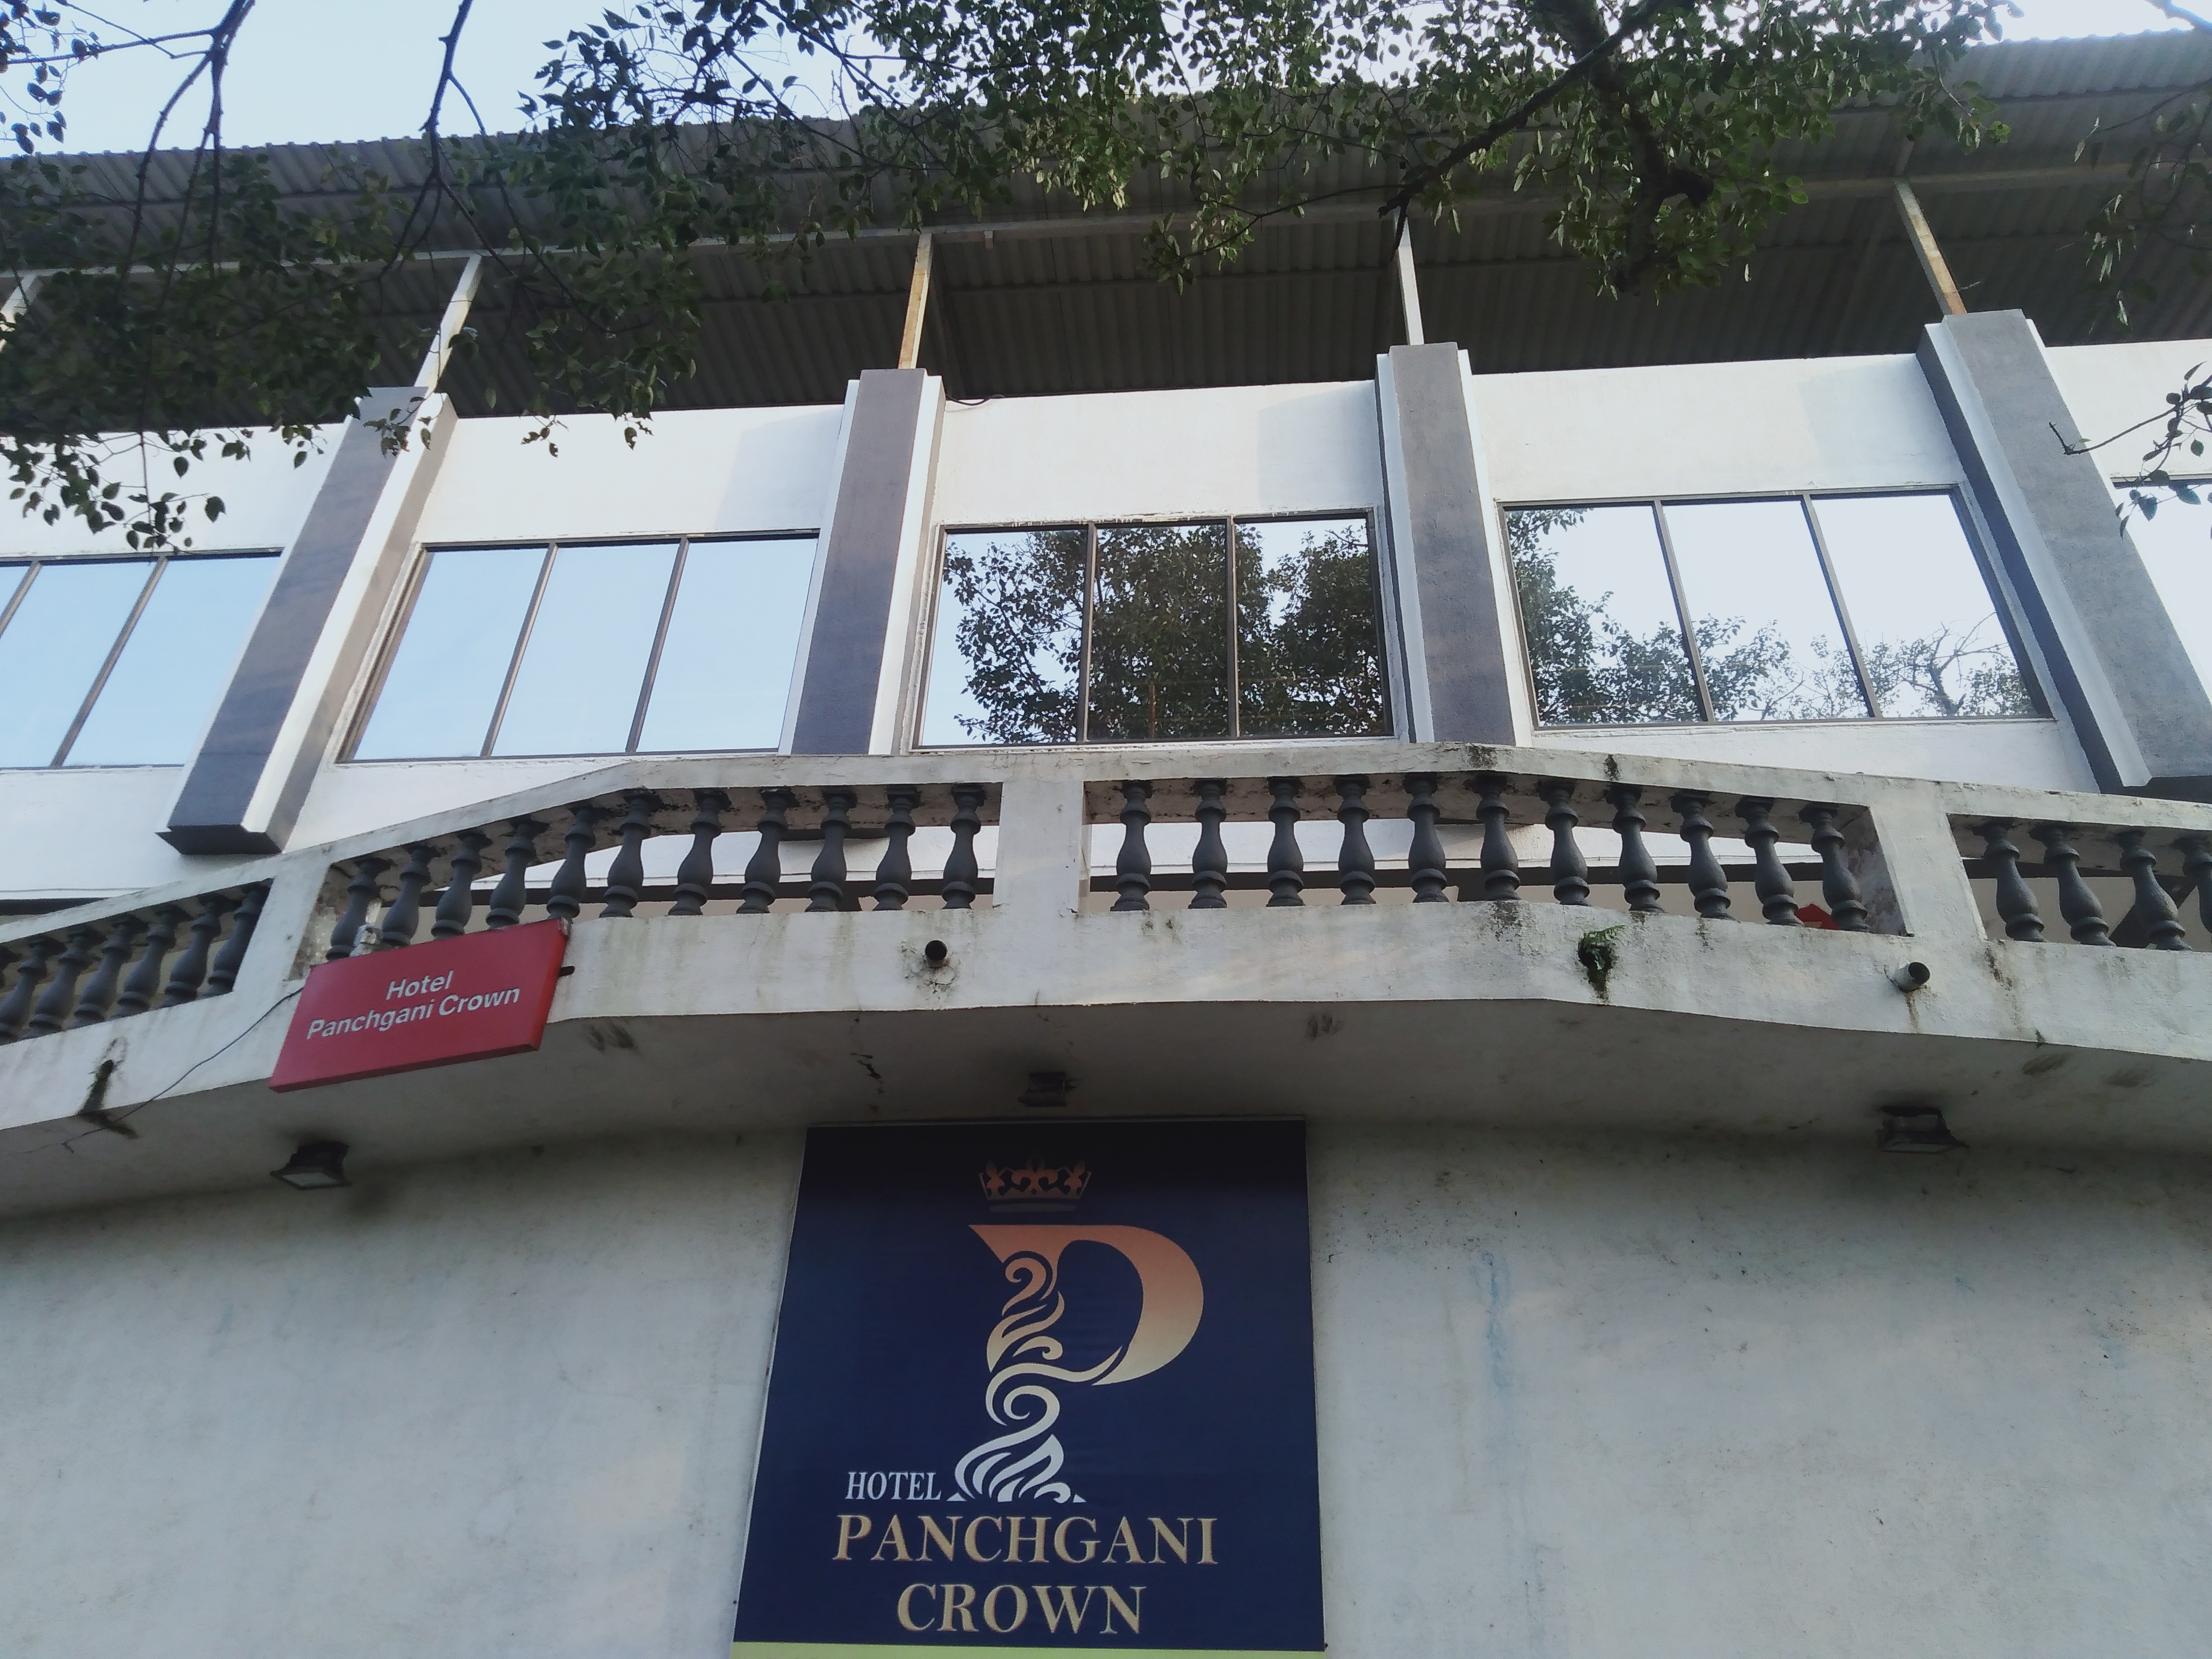 Hotel Panchgani Crown